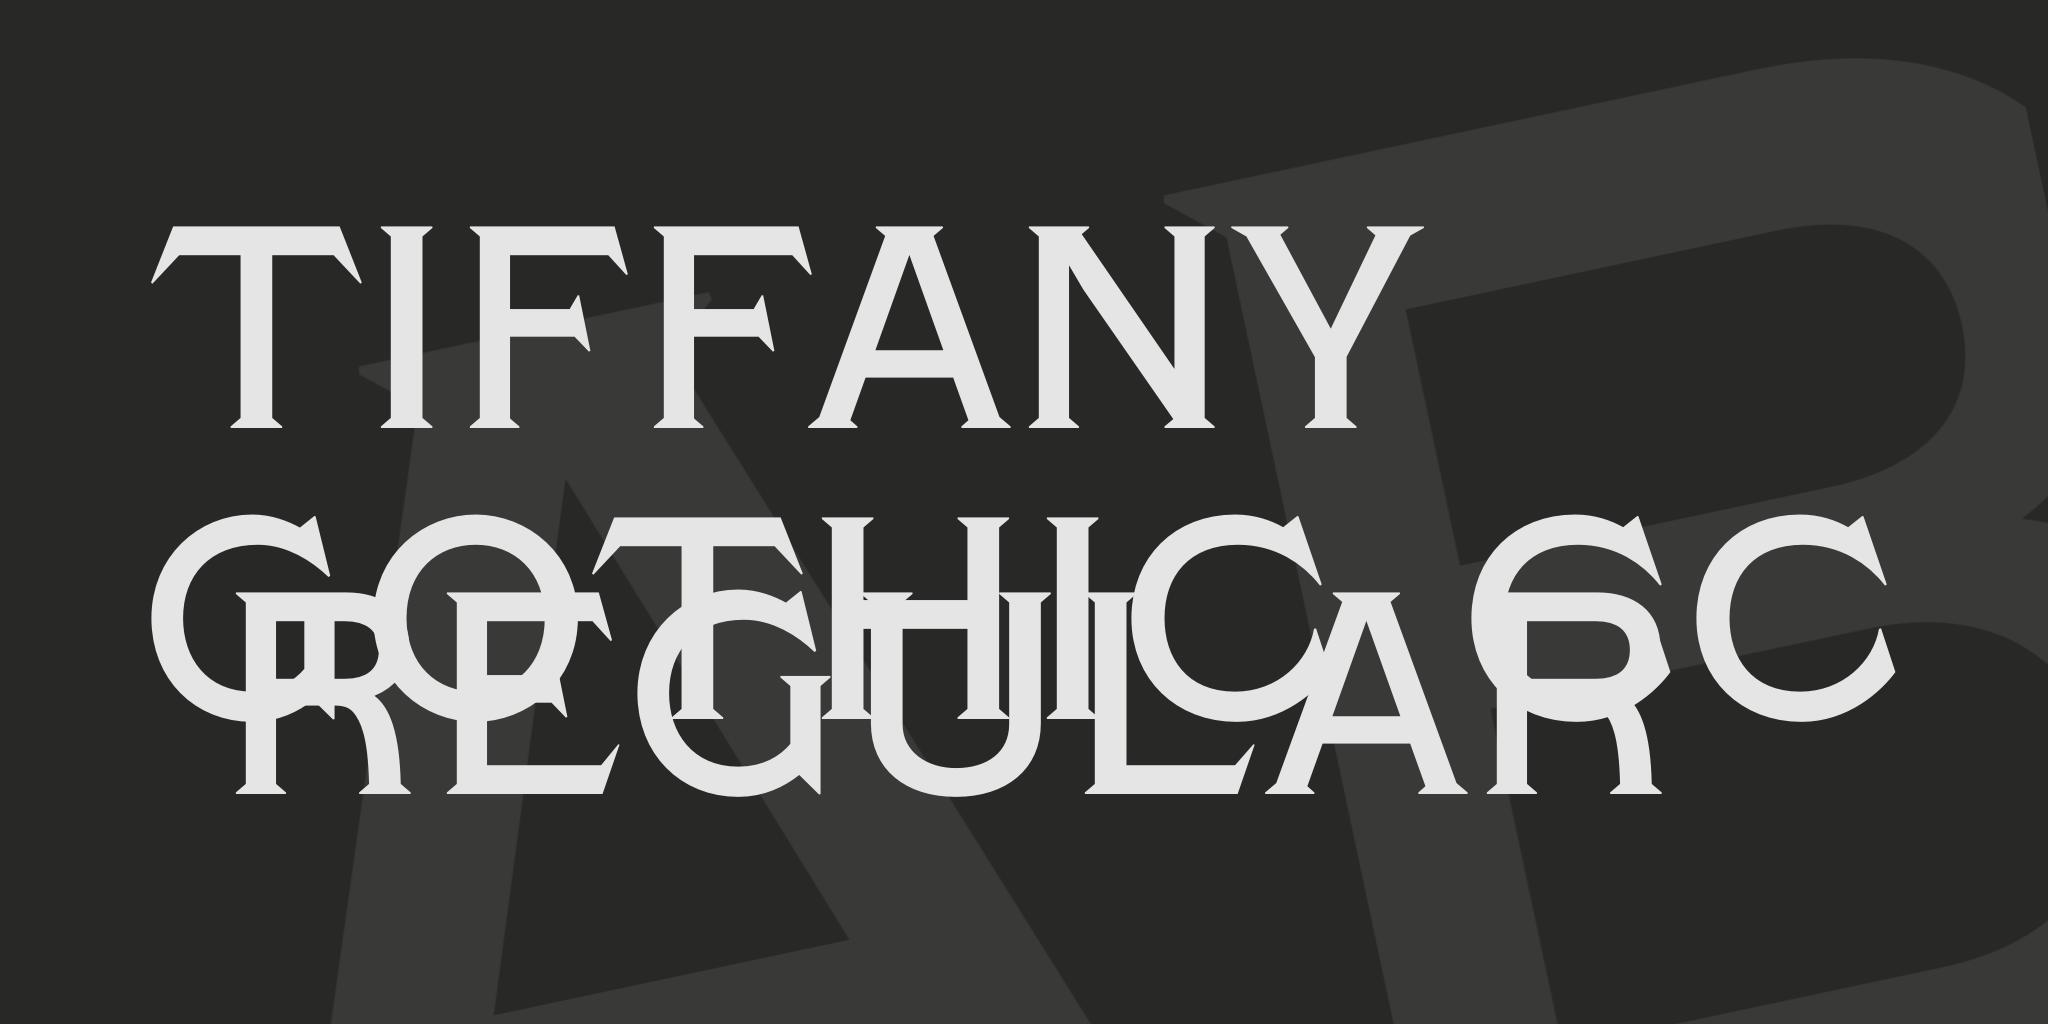 Tiffany Gothic CC